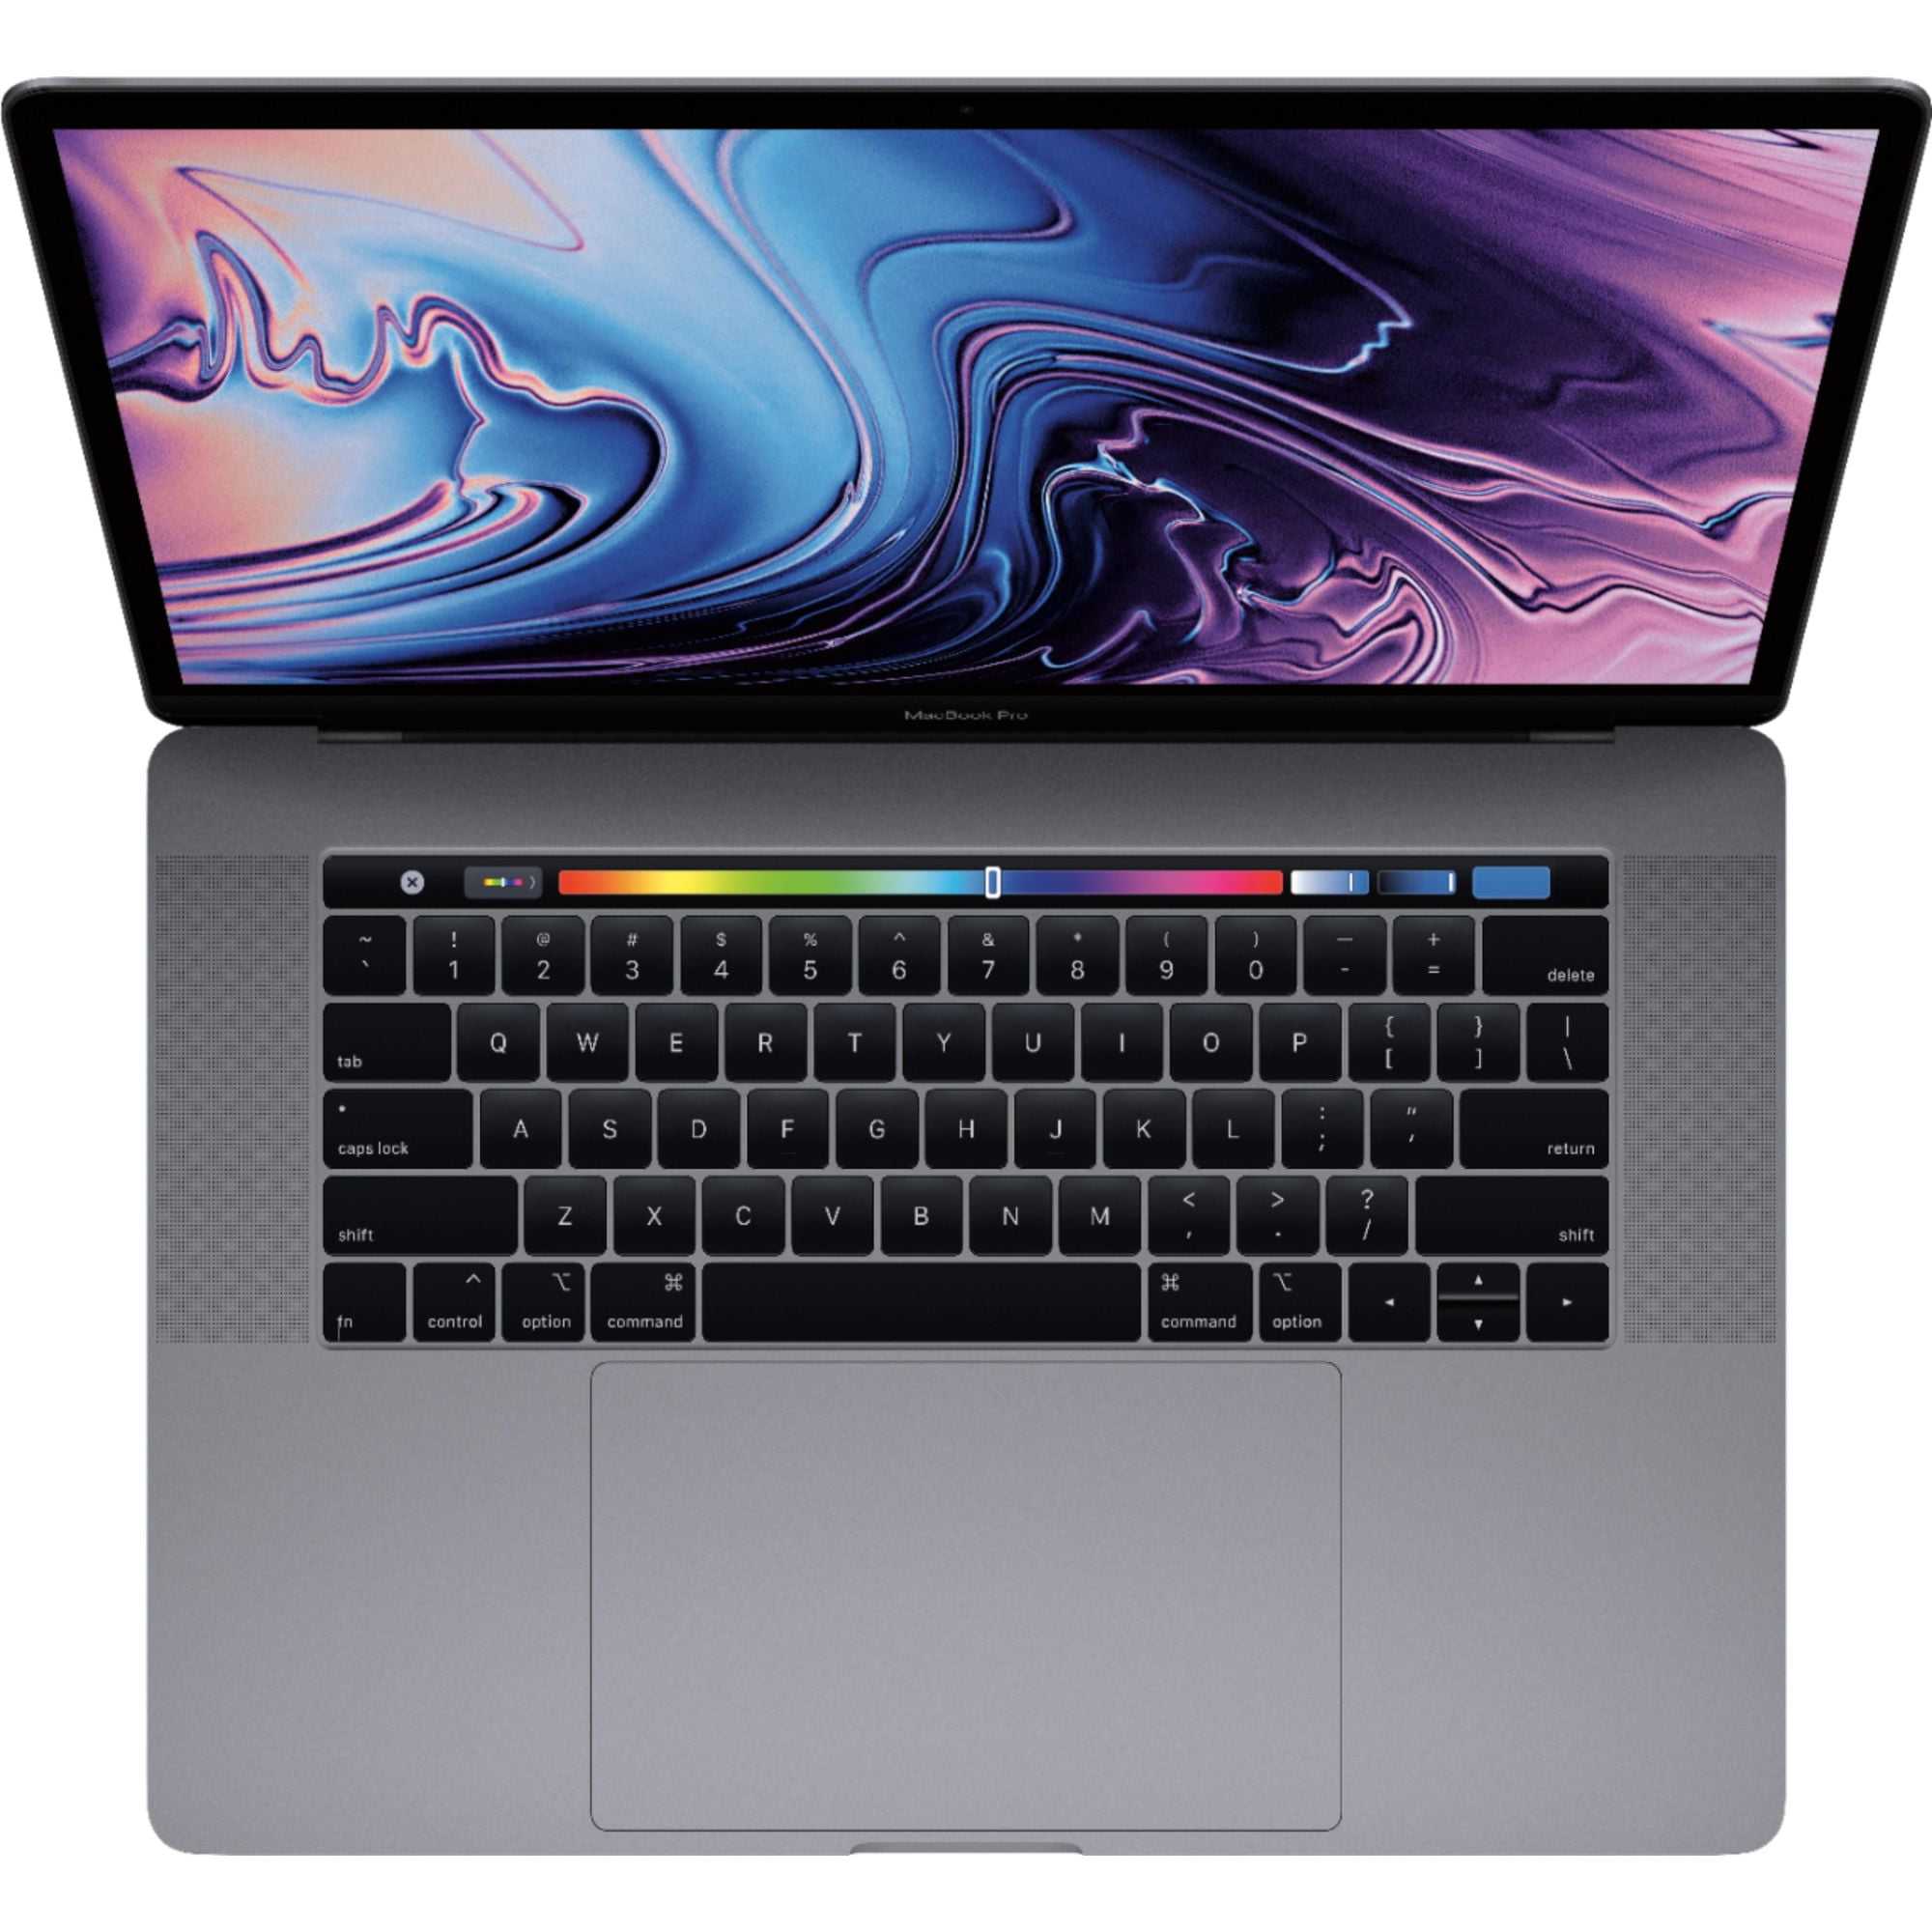 年轻人第一台 Mac，来自一个开发者的 Macbook Pro 2019 16寸简评 | Manjusaka